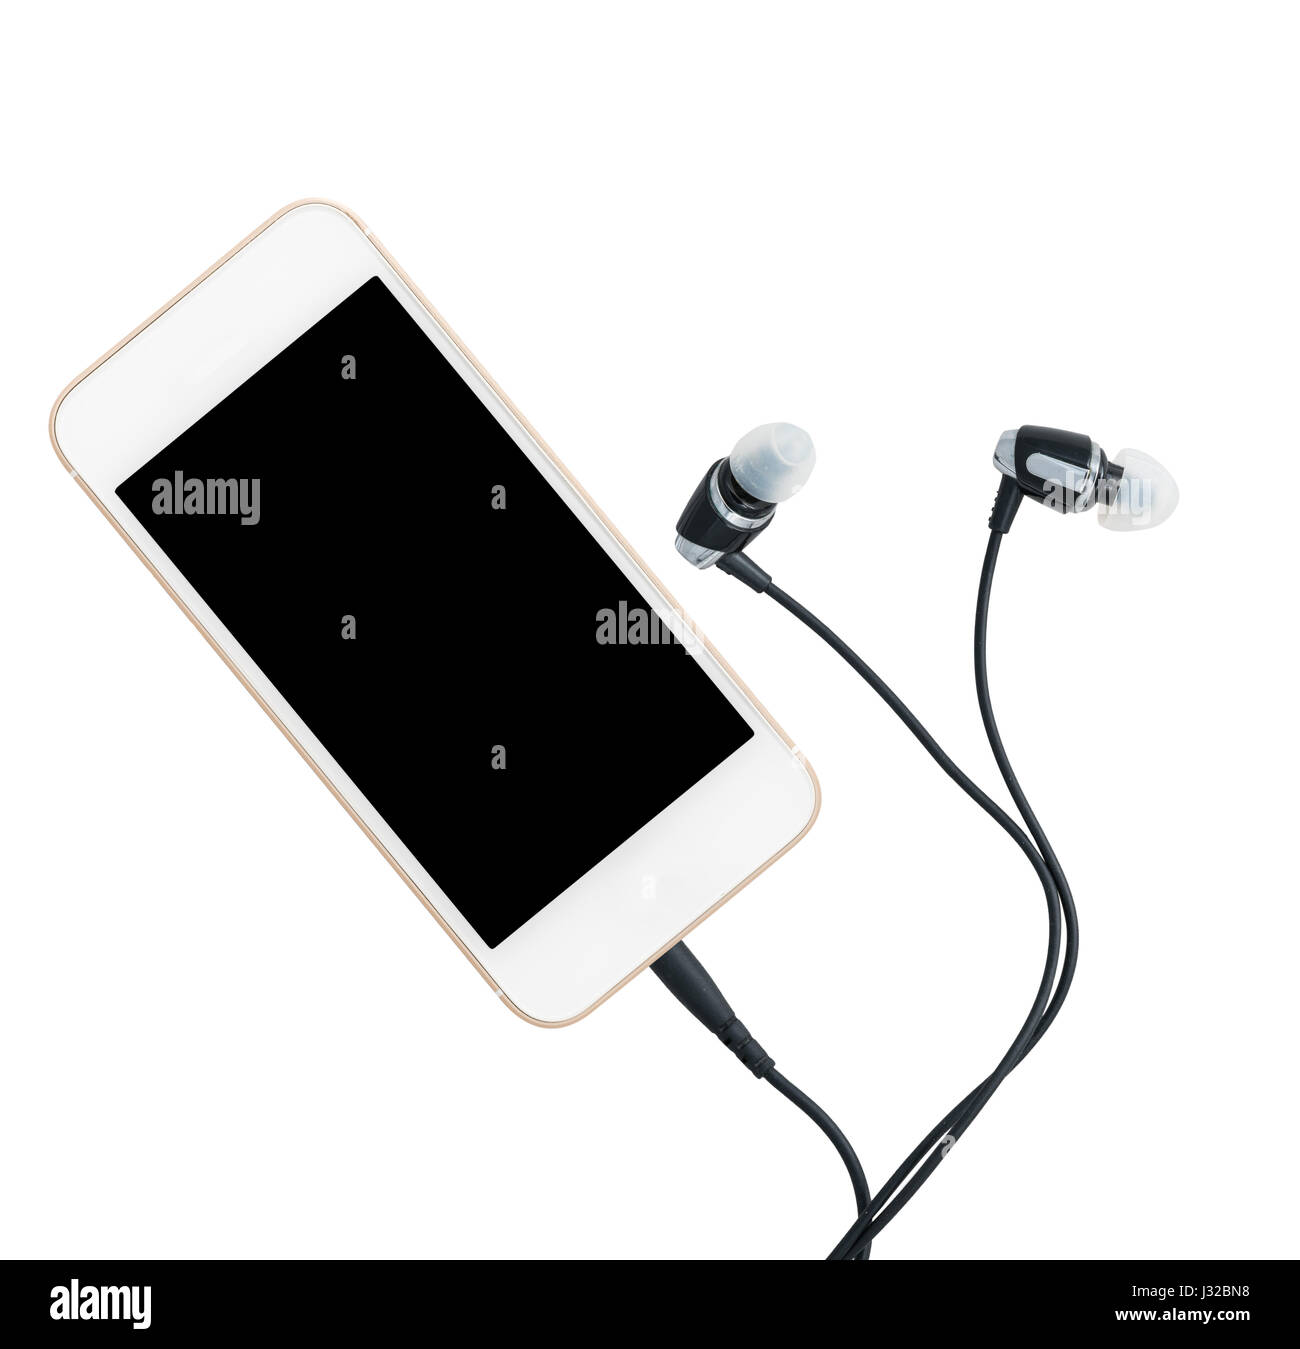 Reproductor de música digital MP3 incorporada en el smartphone o teléfono móvil con auriculares Foto de stock